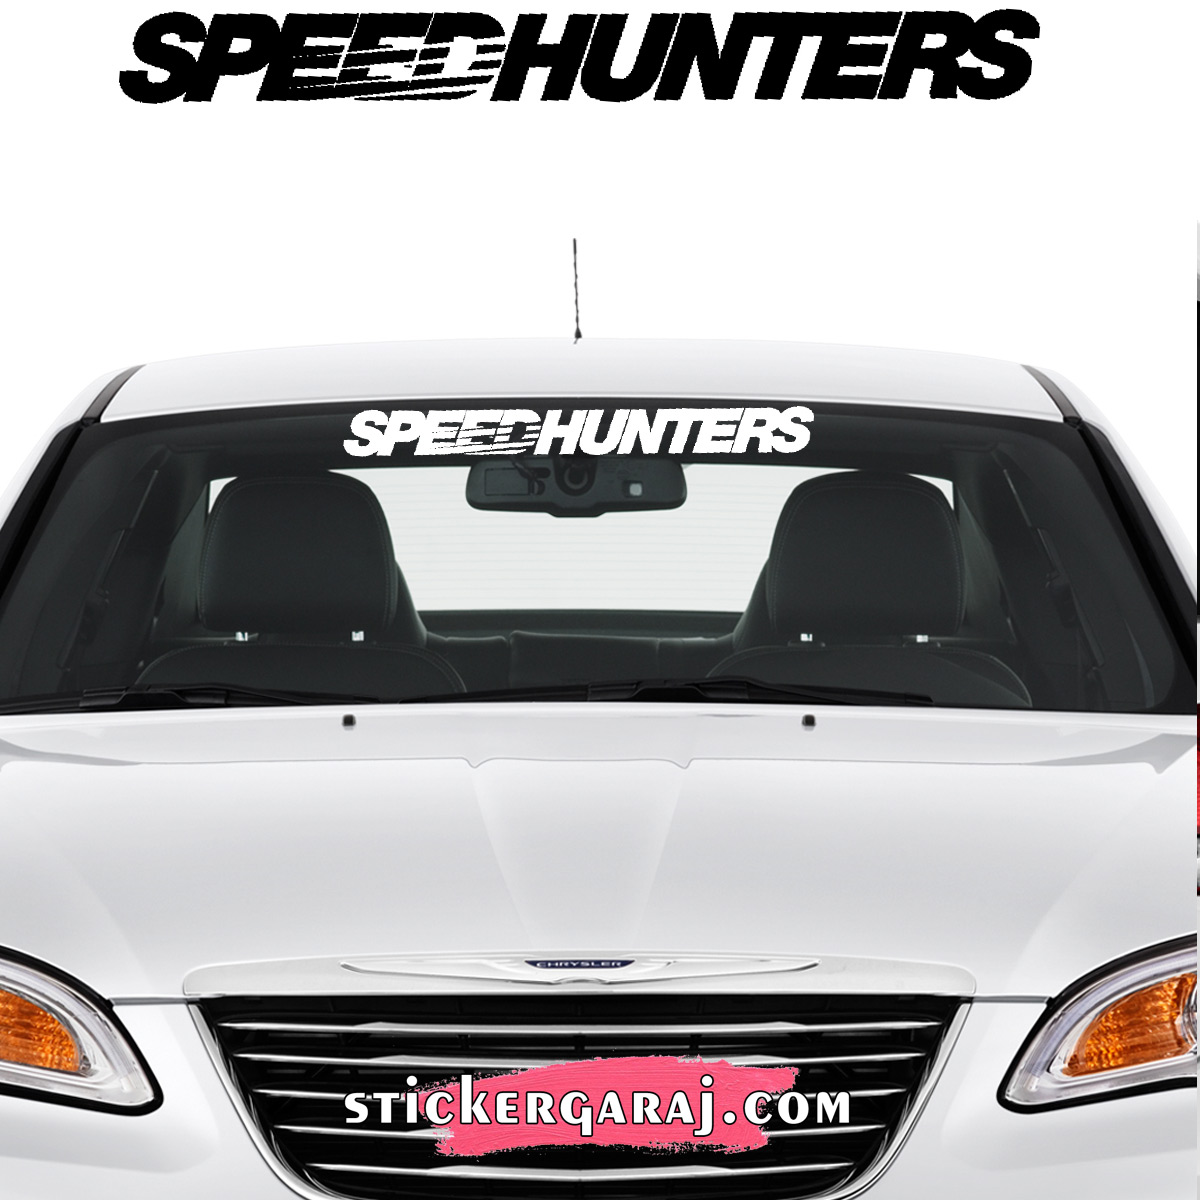 Ford oto sticker - Ford cam sticker - speedhunters